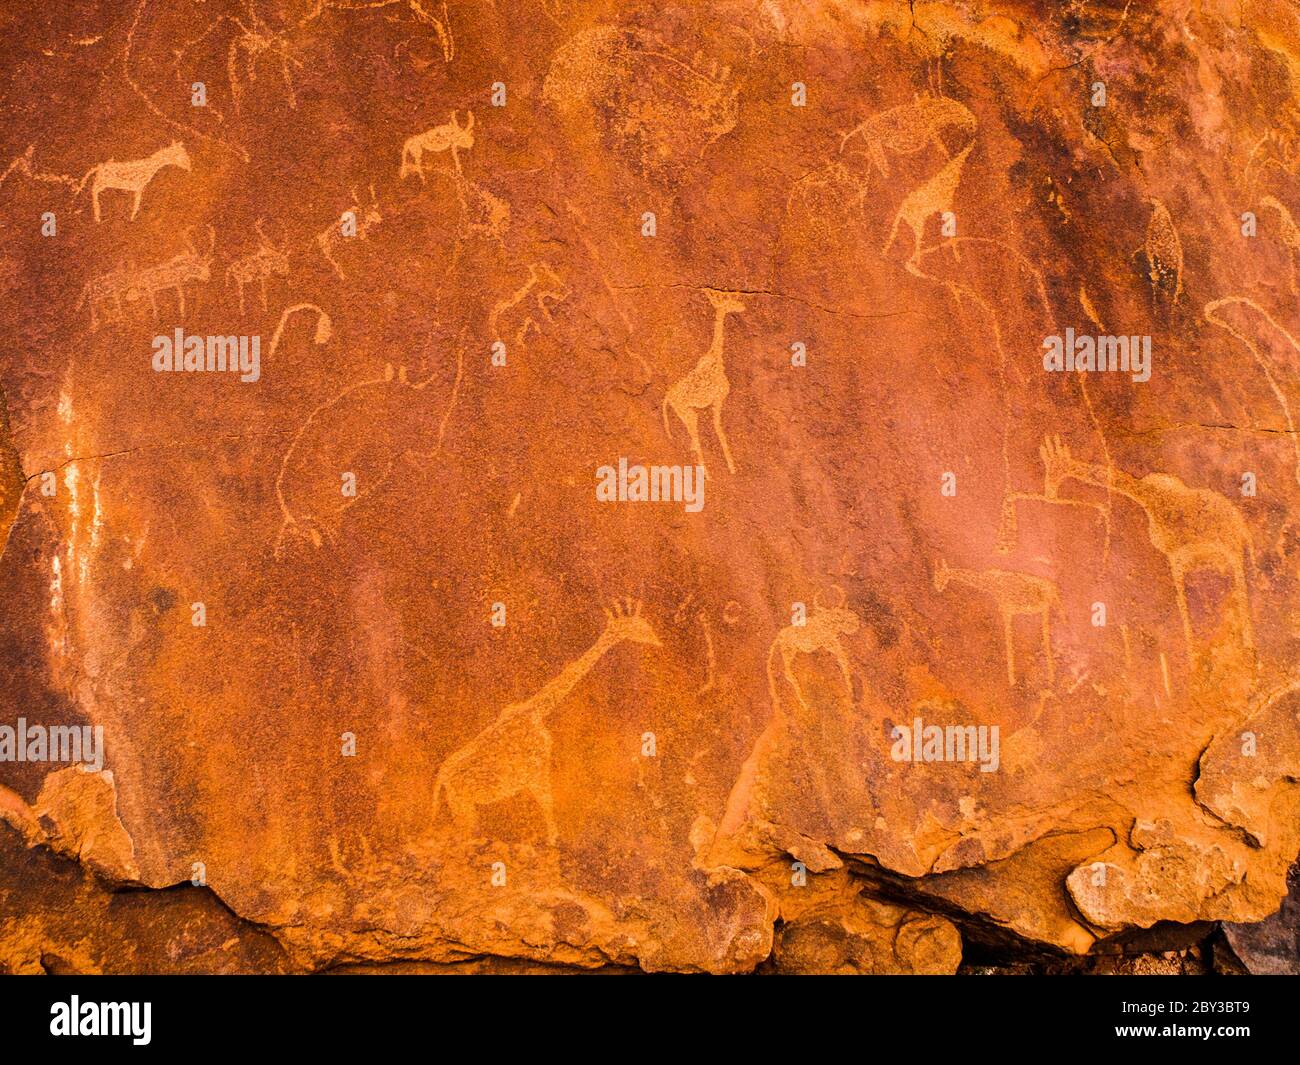 Incisioni Boscimane nella roccia di granito, Twyfelfontein Patrimonio dell'Umanità dell'UNESCO, Regione di Kunene, Damaraland, Namibia, Africa. Foto Stock